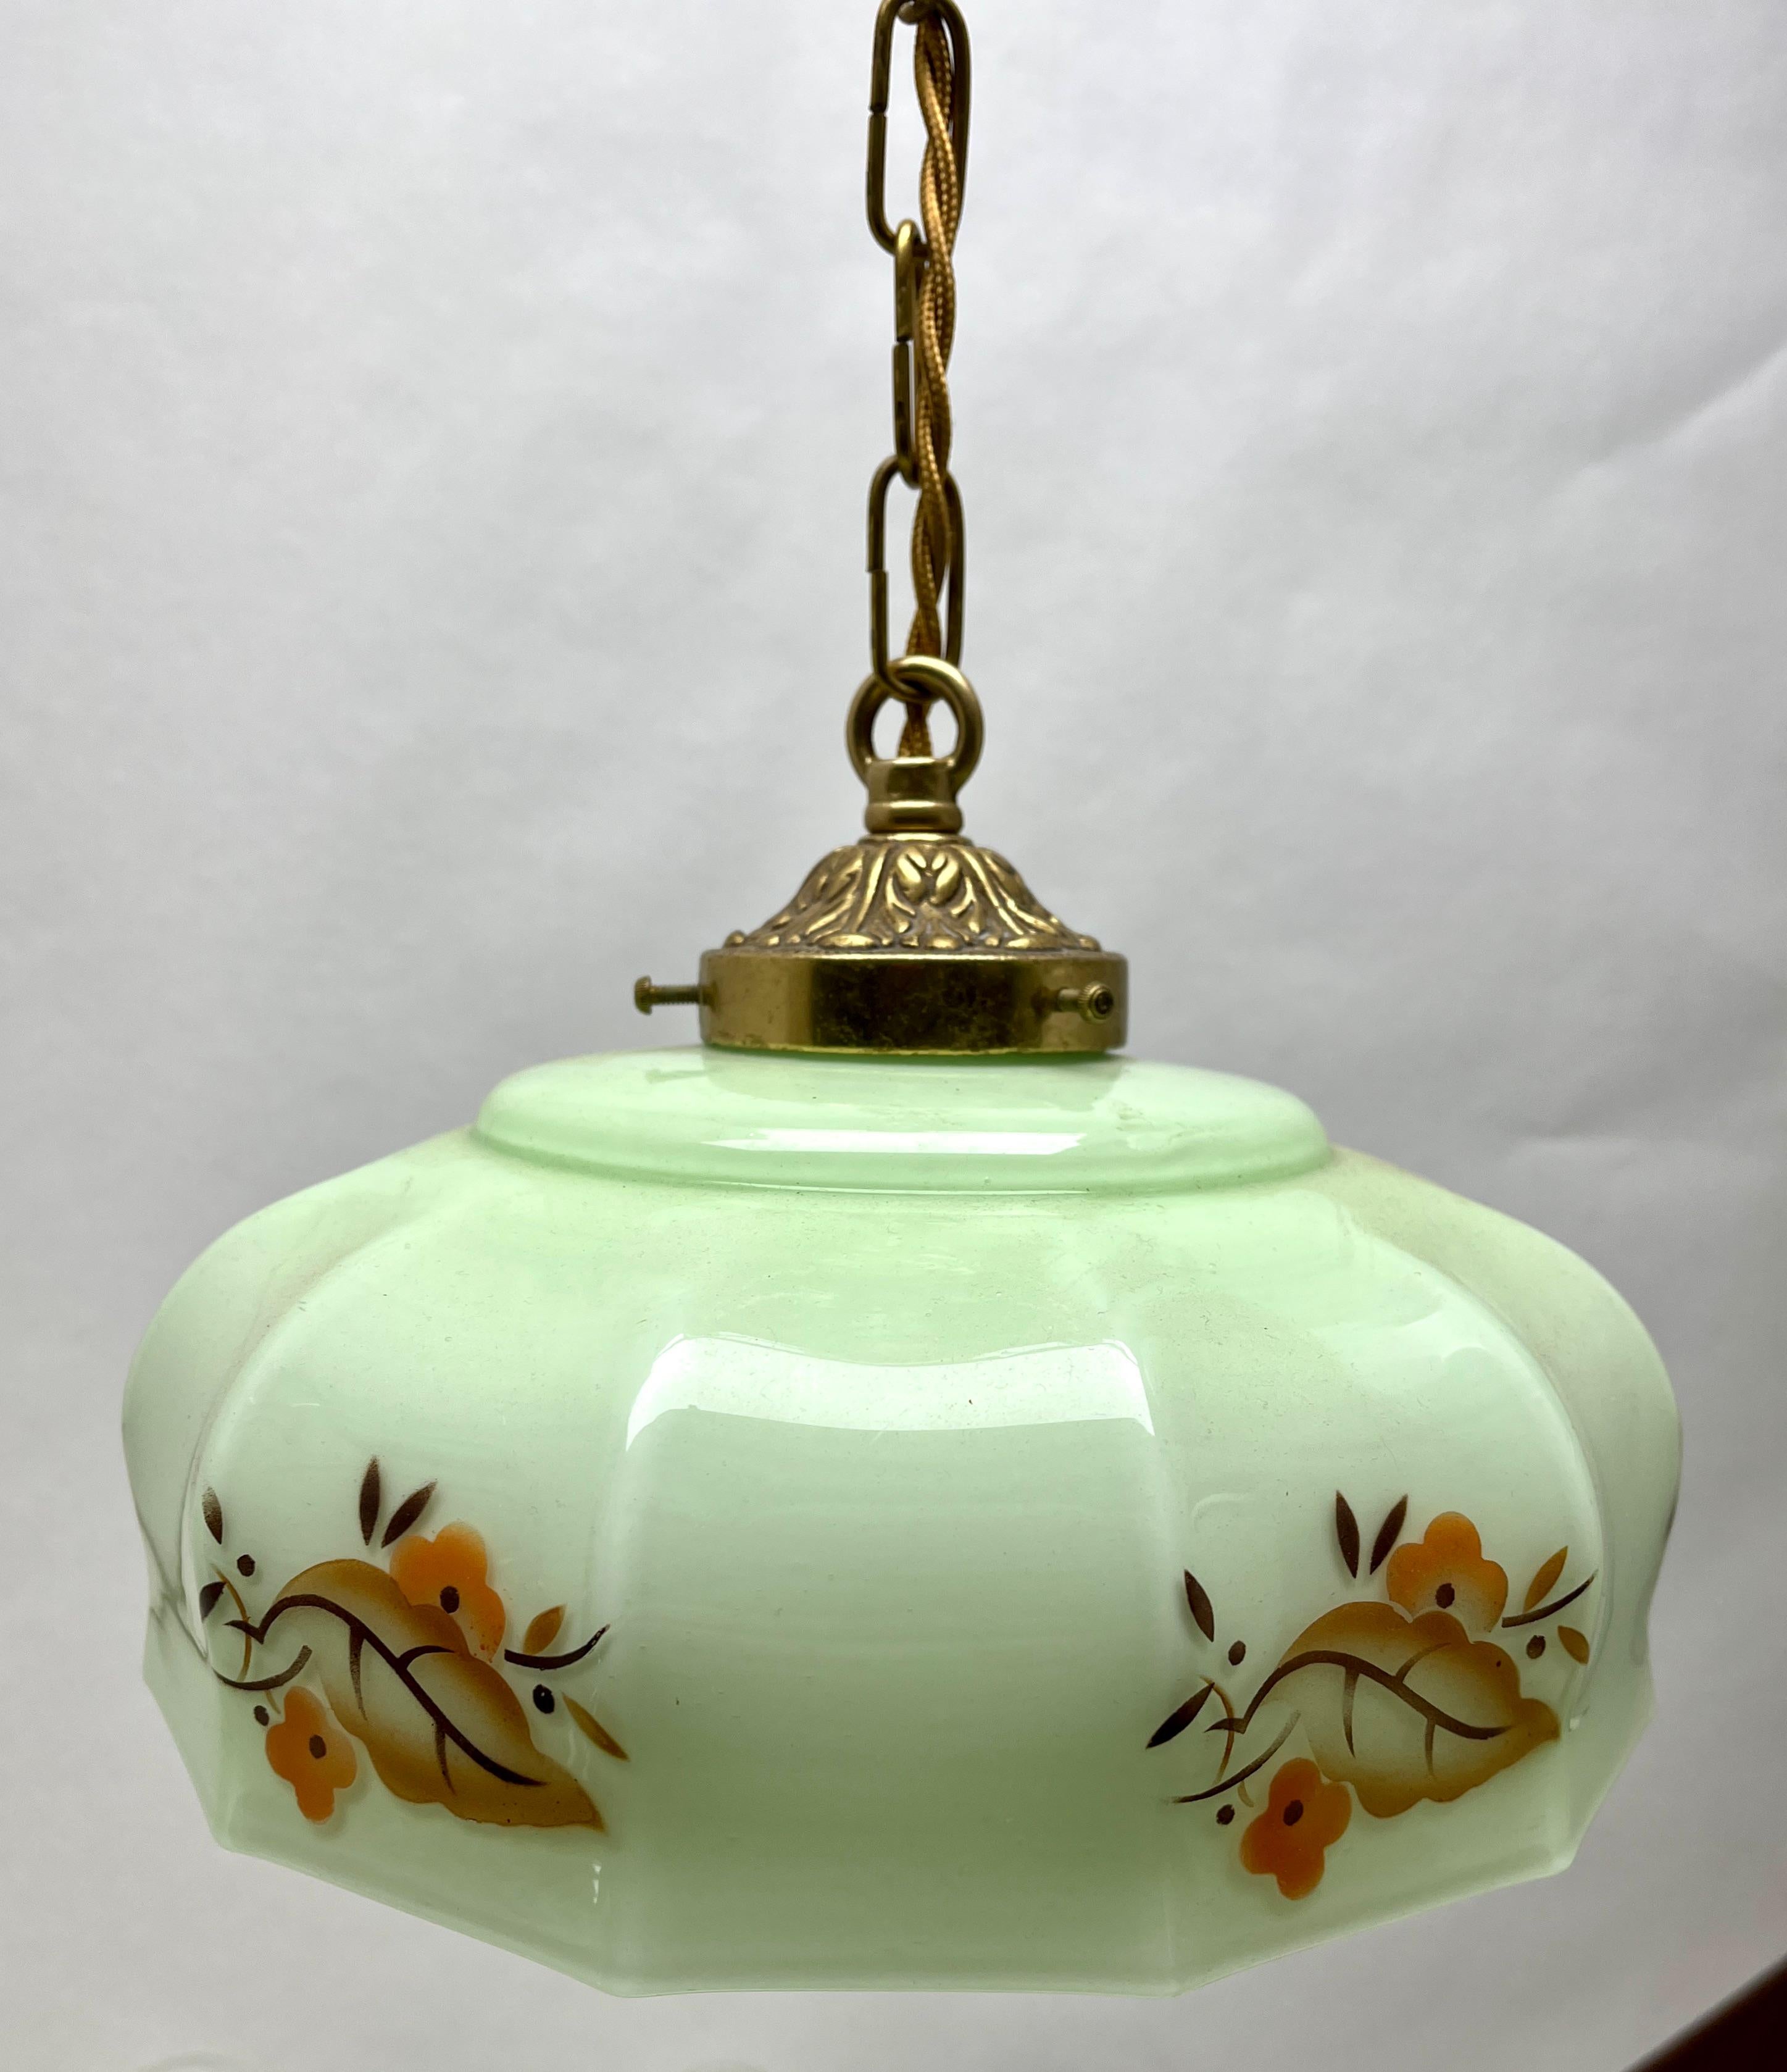 Art Nouveau Deckenleuchte
Die Fotografie kann die schlichte, elegante Beleuchtung dieser Lampe nicht einfangen.

Hängende Deckenleuchte mit Schraubbefestigung für einen stilvollen belgischen Art-Deco-Lampenschirm. 
Gute Verteilung von dunkleren